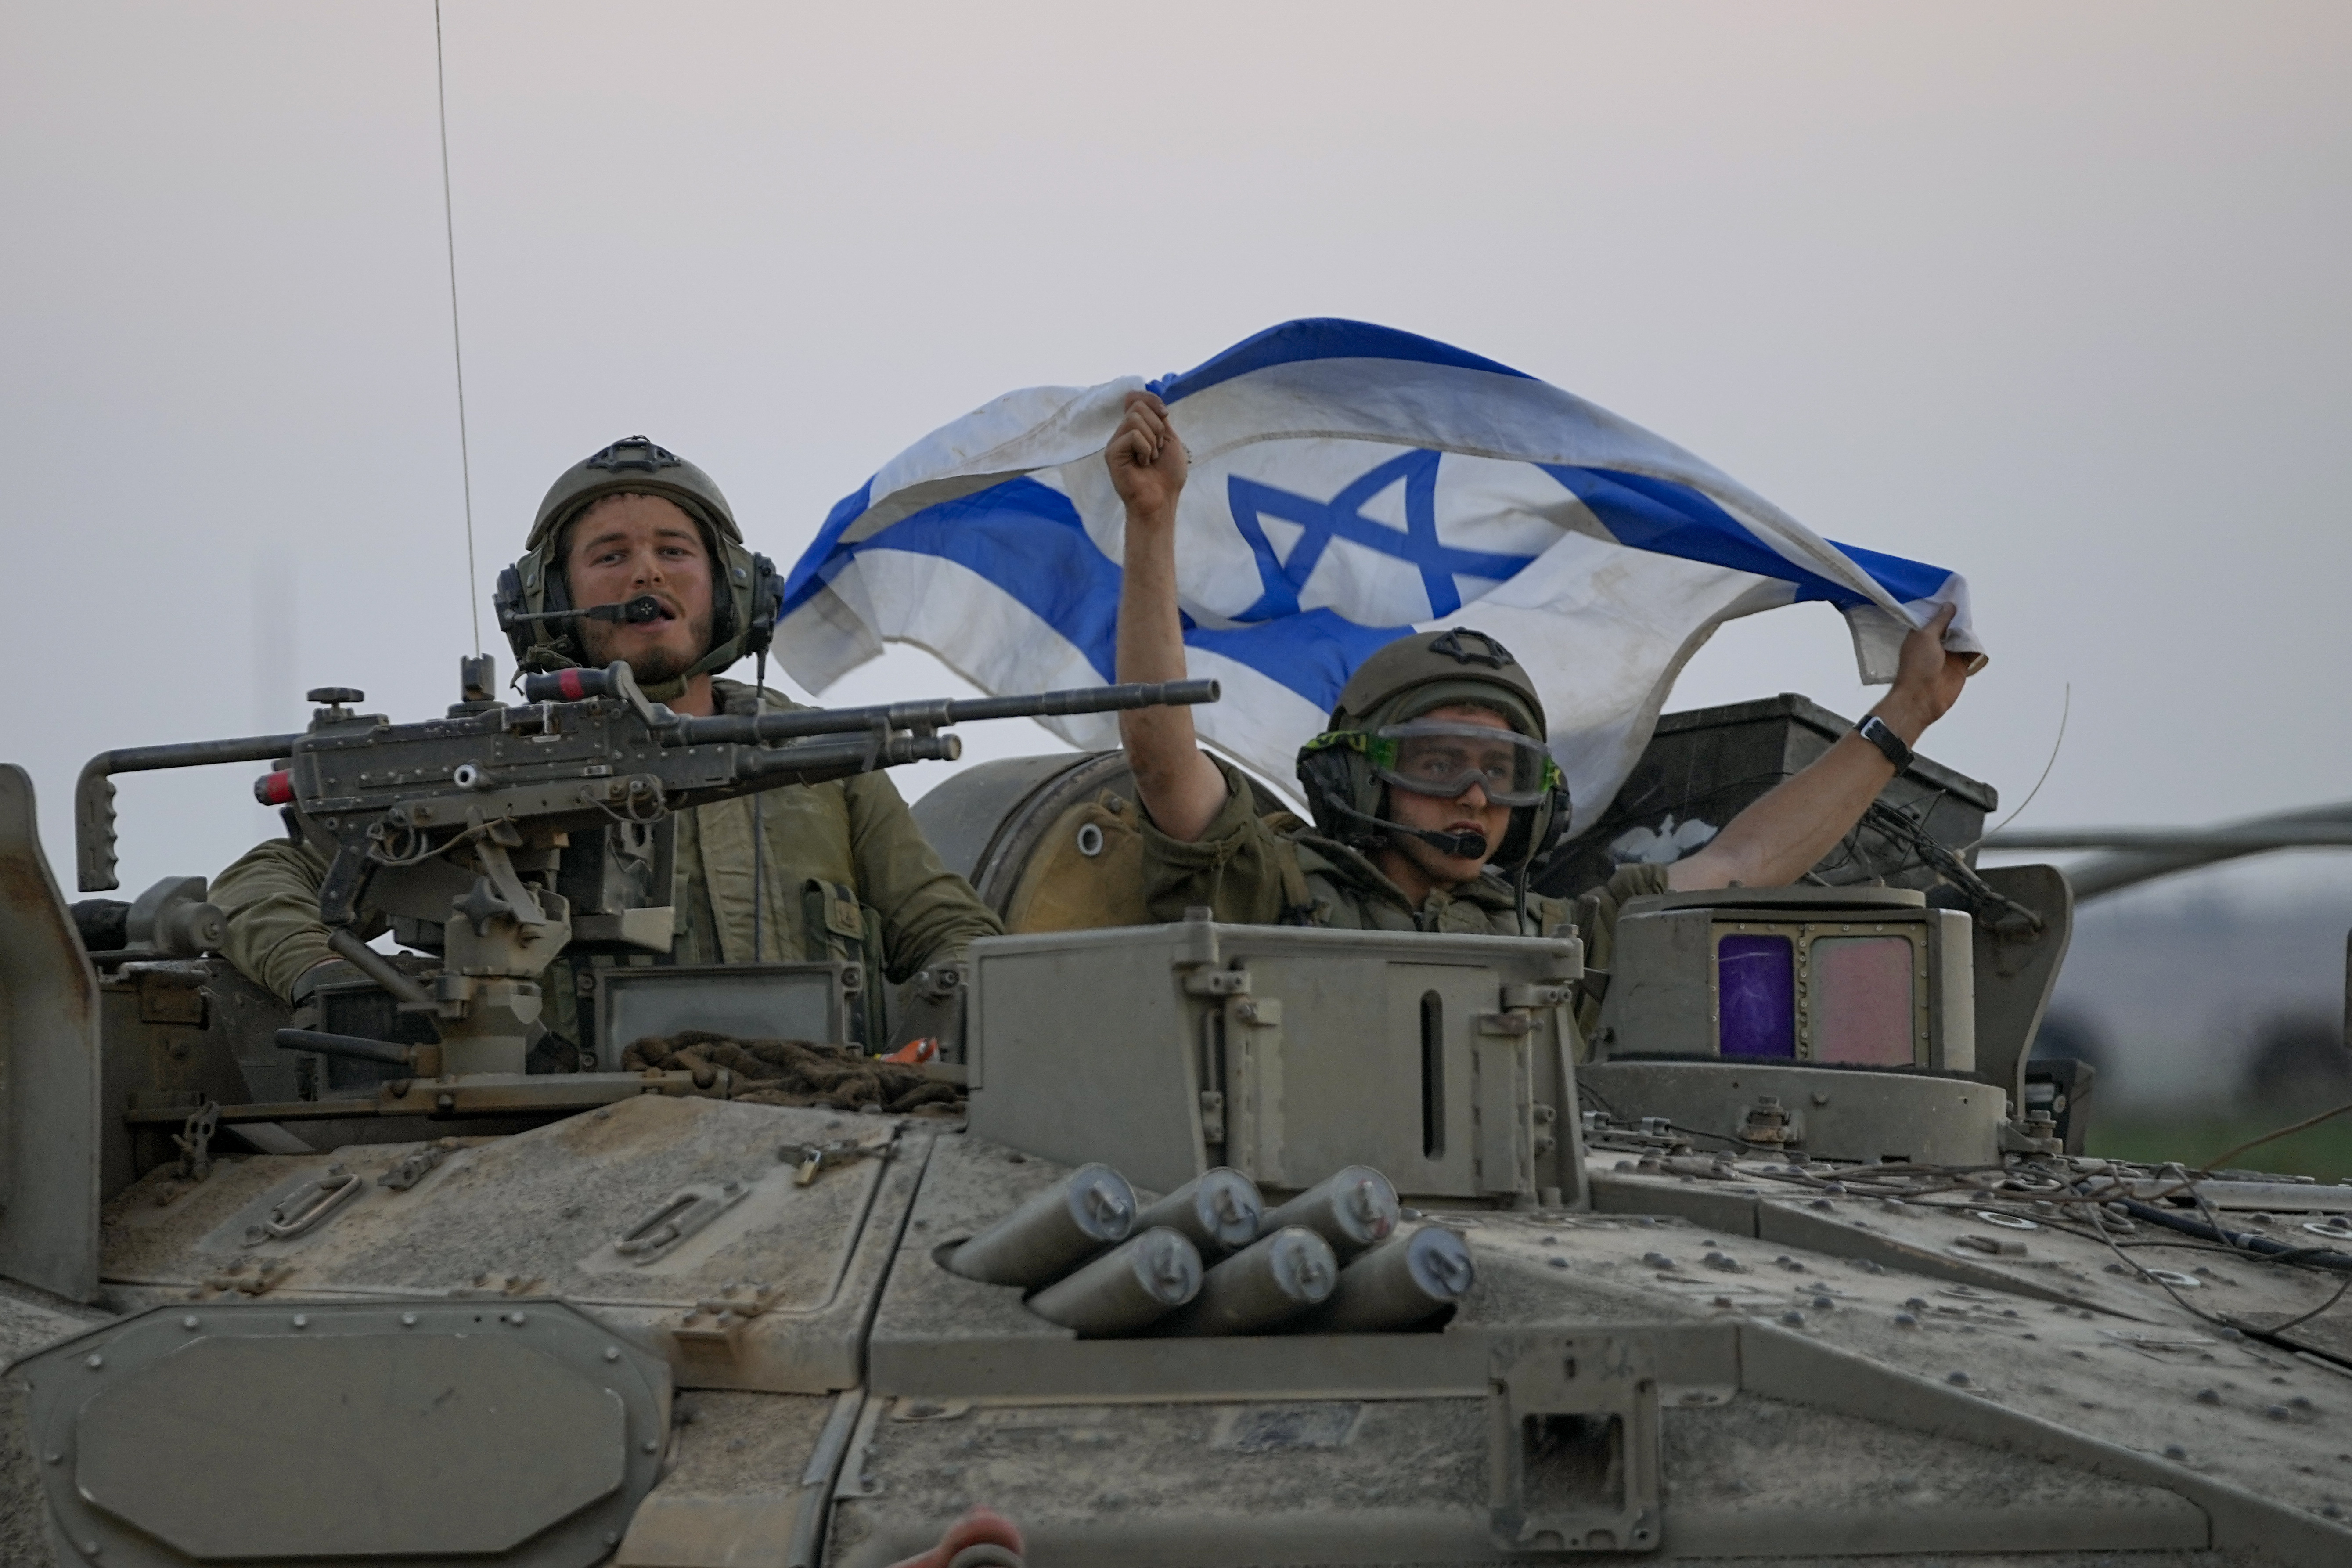 SUA au constatat că 5 unităţi militare israeliene au comis încălcări grave ale drepturilor omului